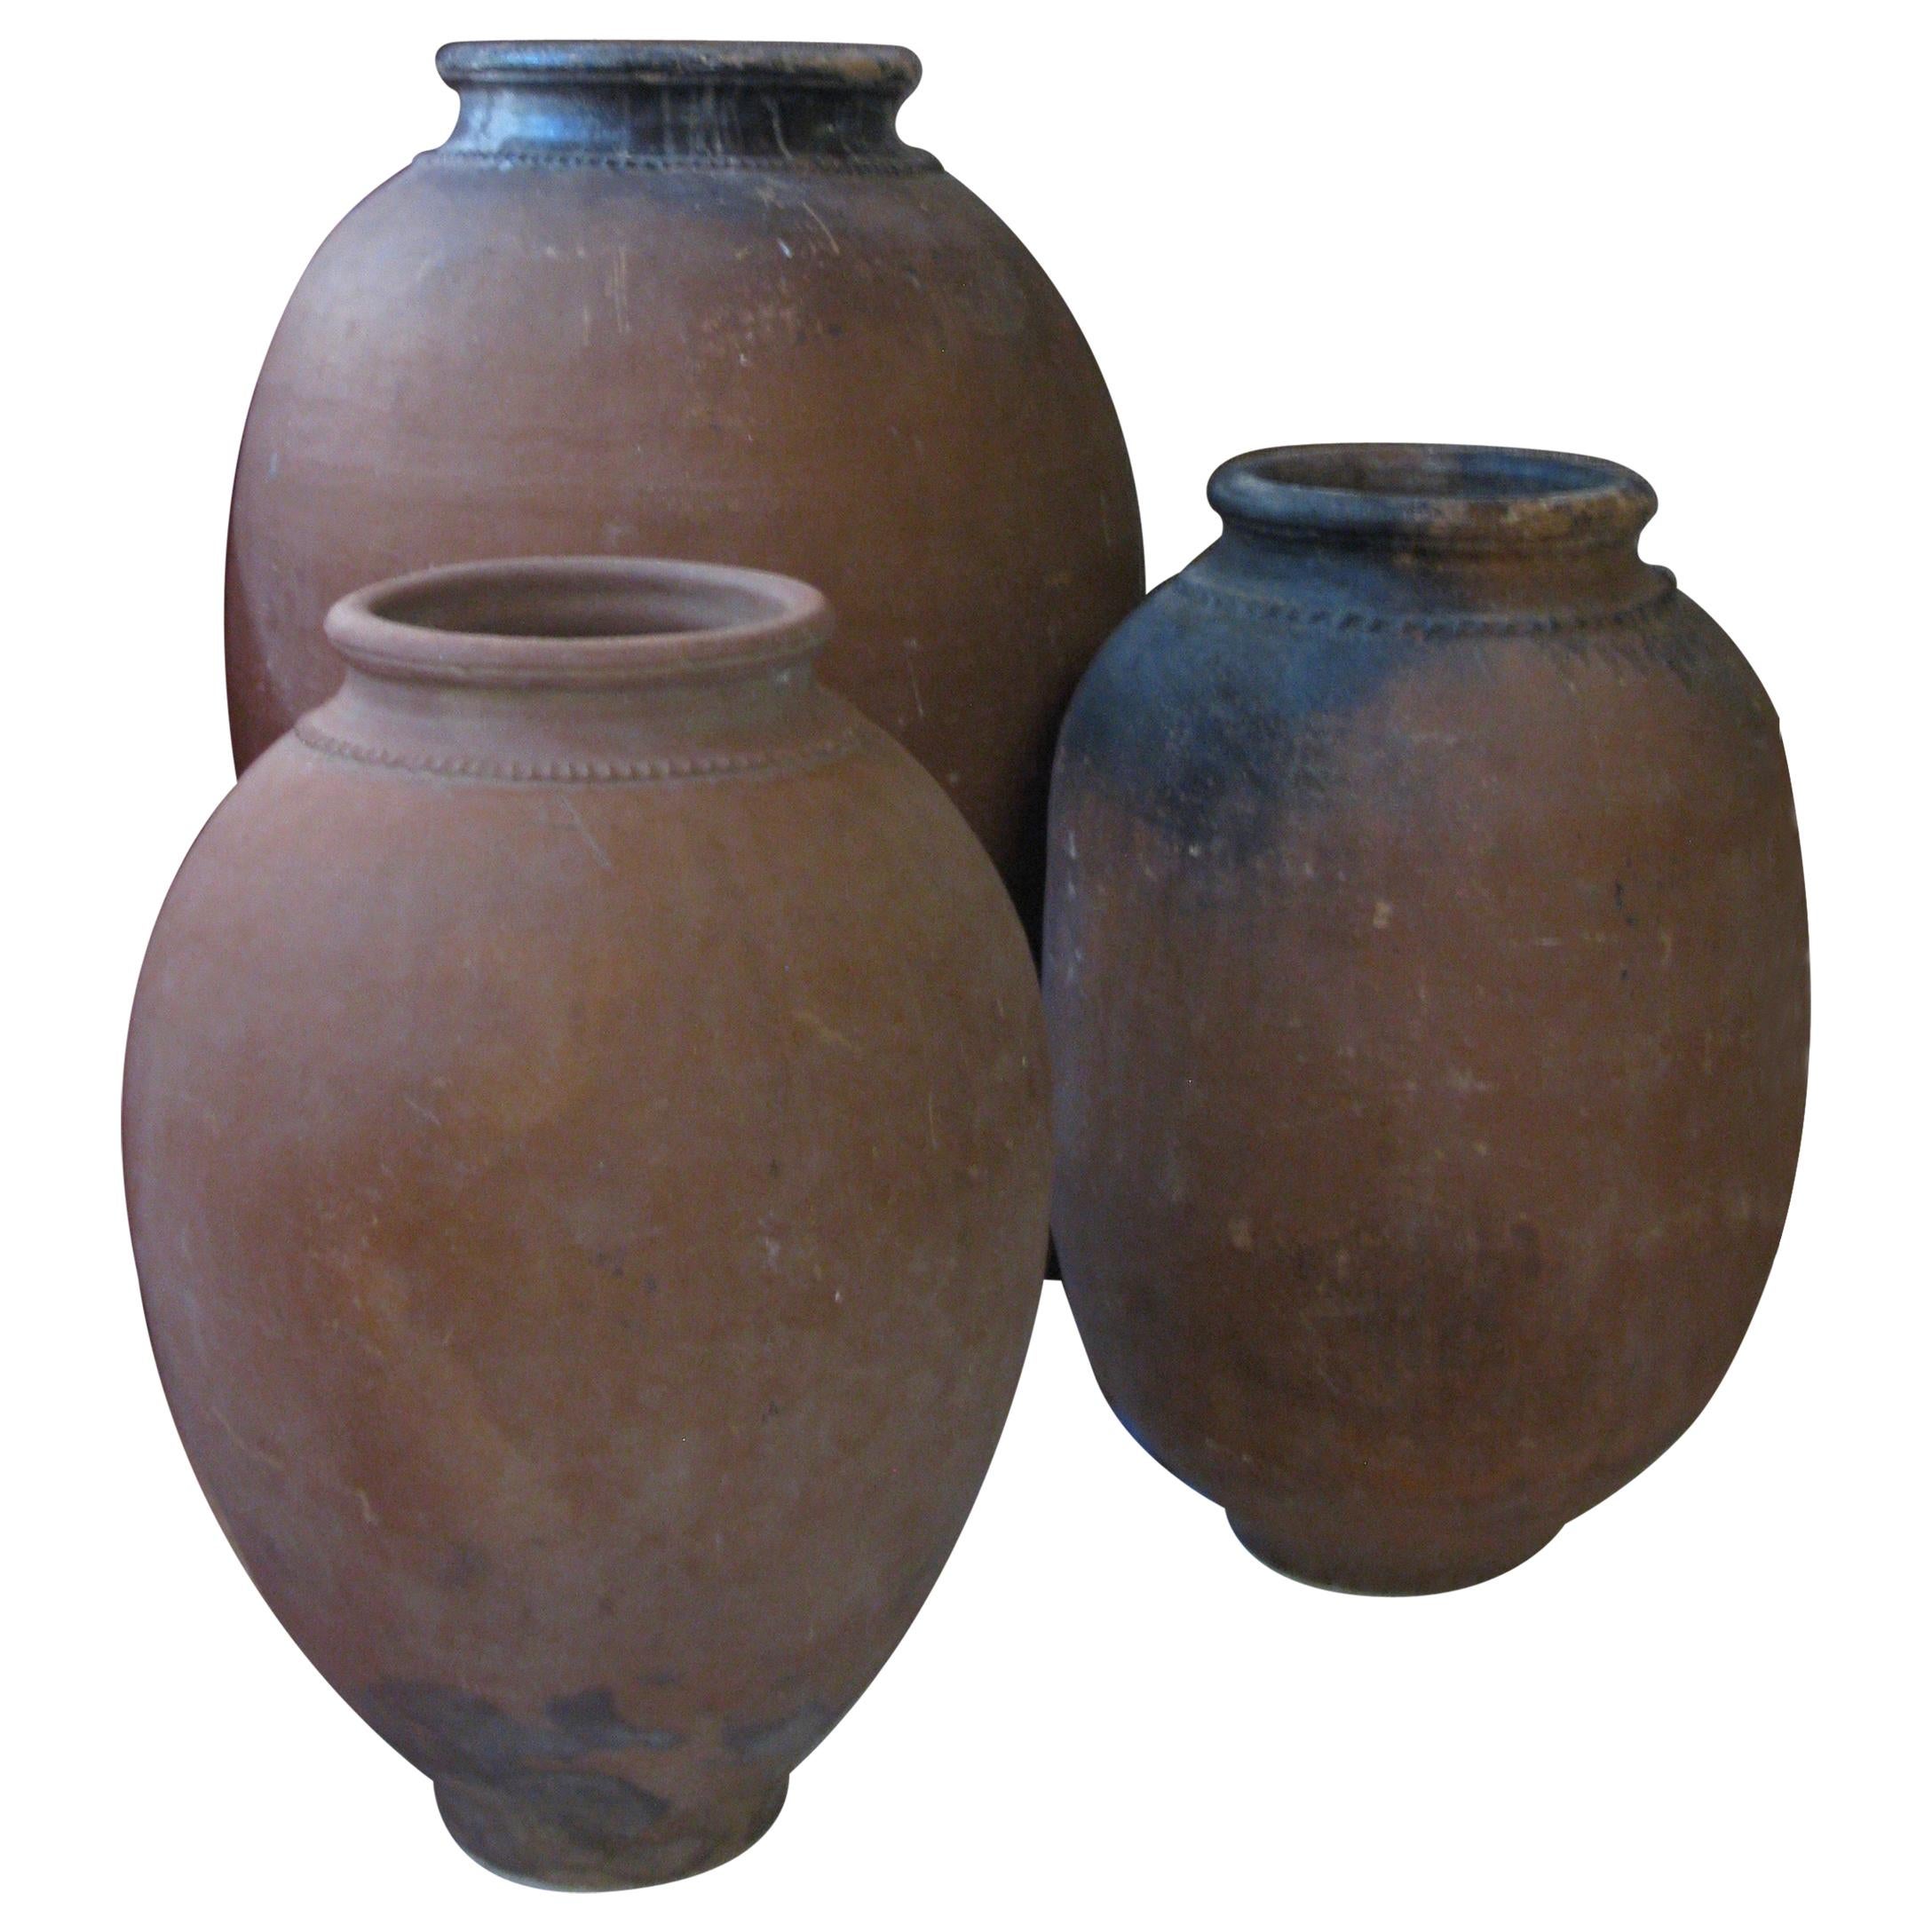 Antique Olive Pot, Olive Pot, Spain, Terracotta Pot, 20th Century